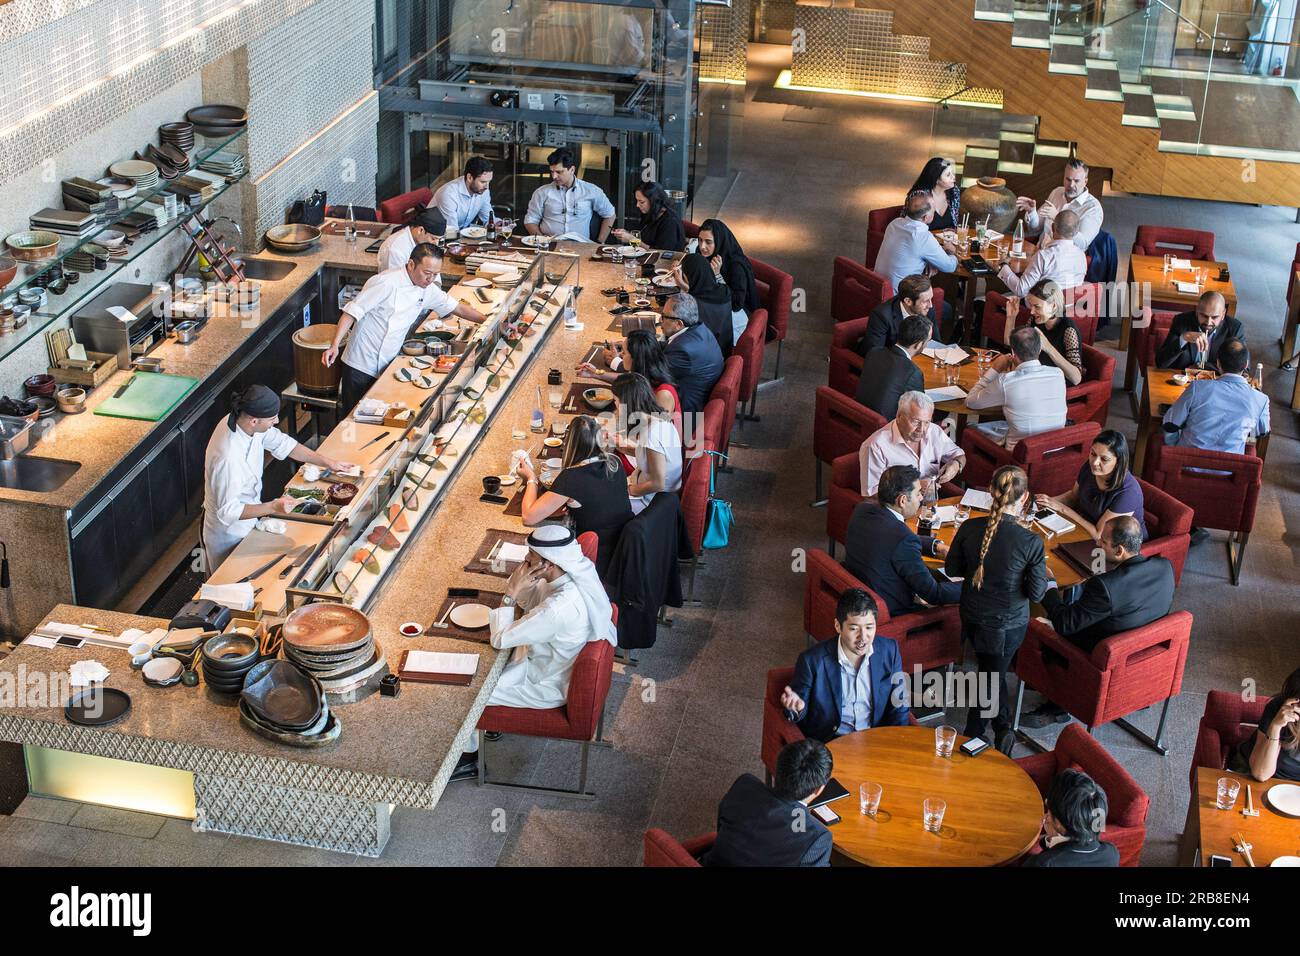 Innere des japanischen Restaurant Zuma im DIFC in Dubai Vereinigte Arabische Emirate Stockfoto